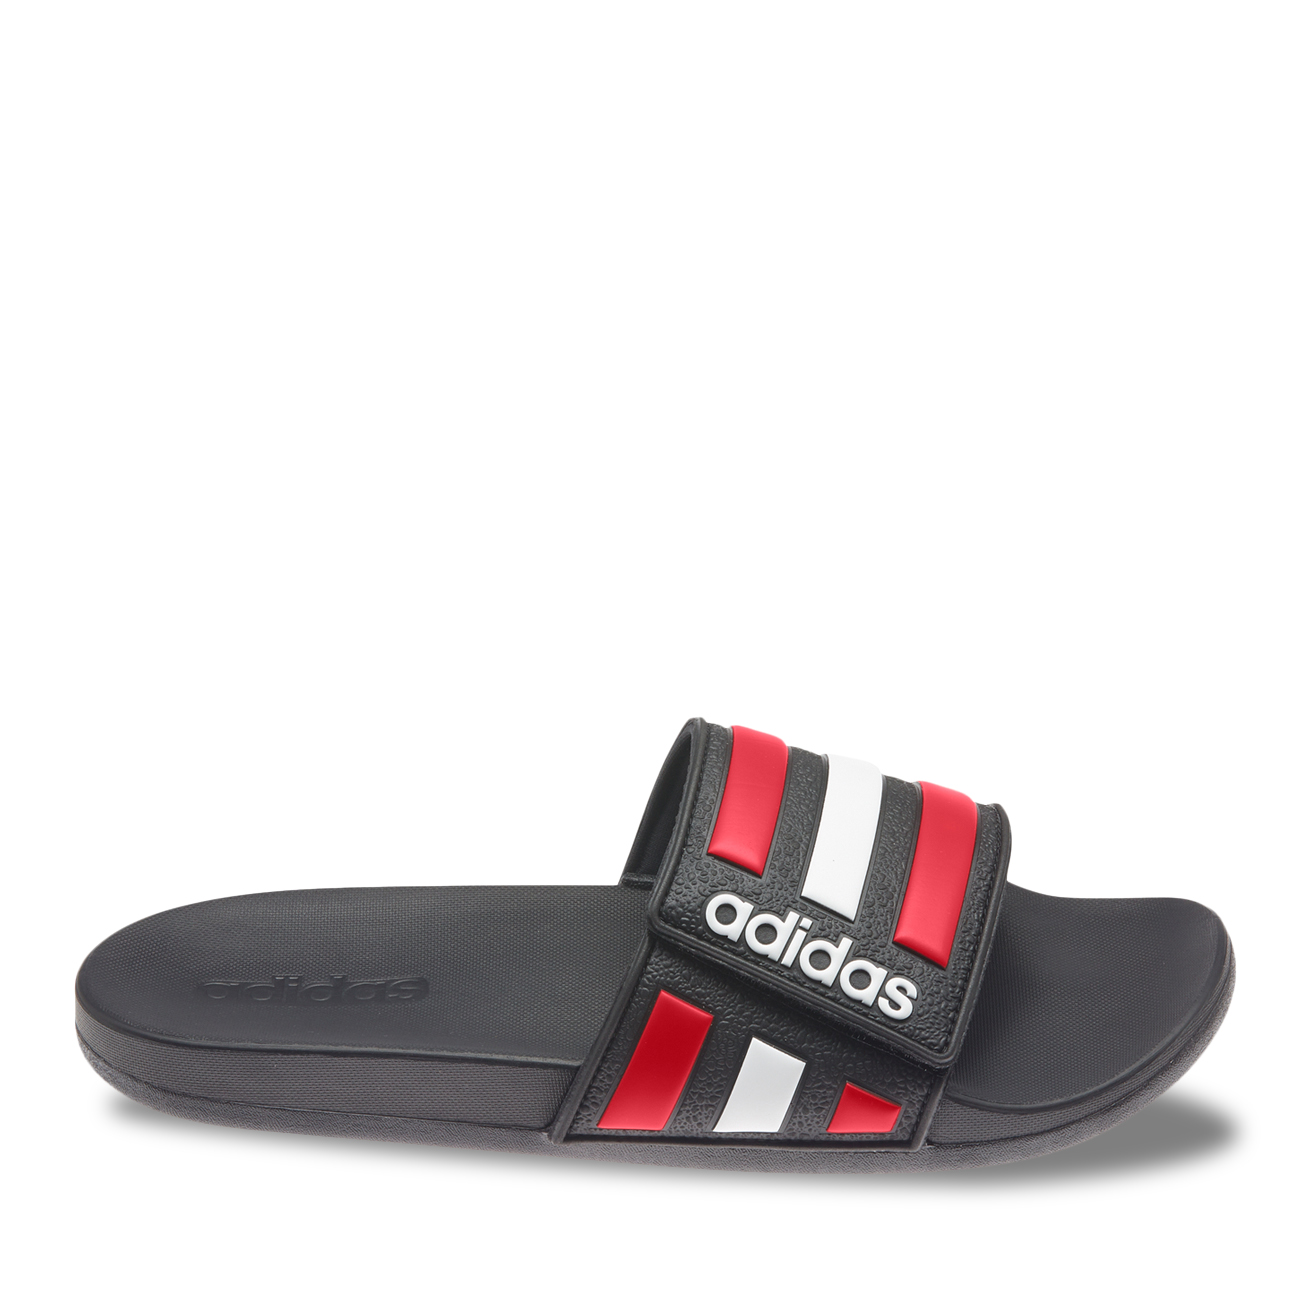 Adidas Online Only Men's Adilette Comfort Adjustable Slide Sandal | DSW